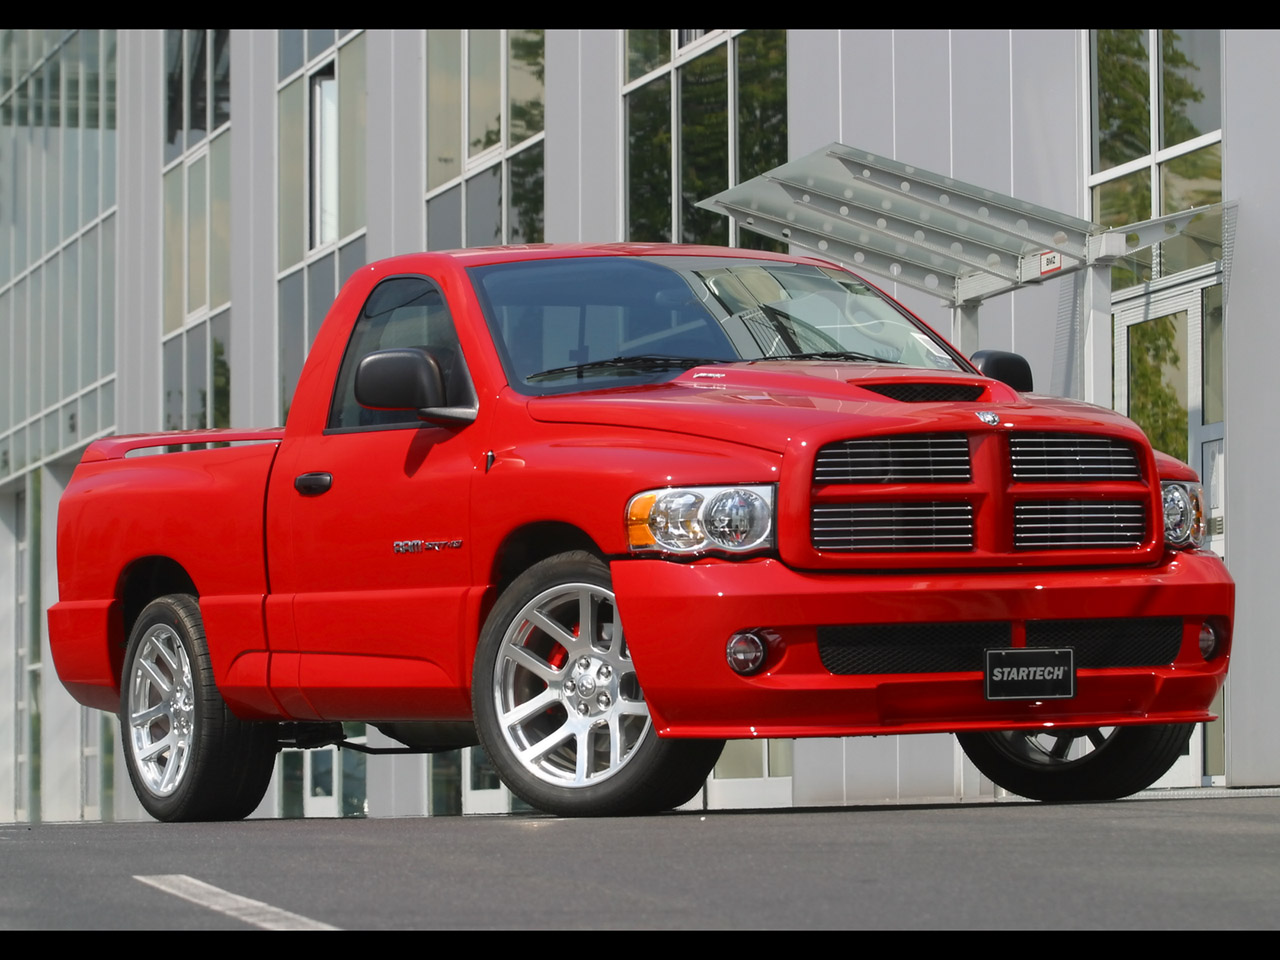 2005 Startech Dodge Ram SRT-10 - Front Angle - 1280x960 Wallpaper